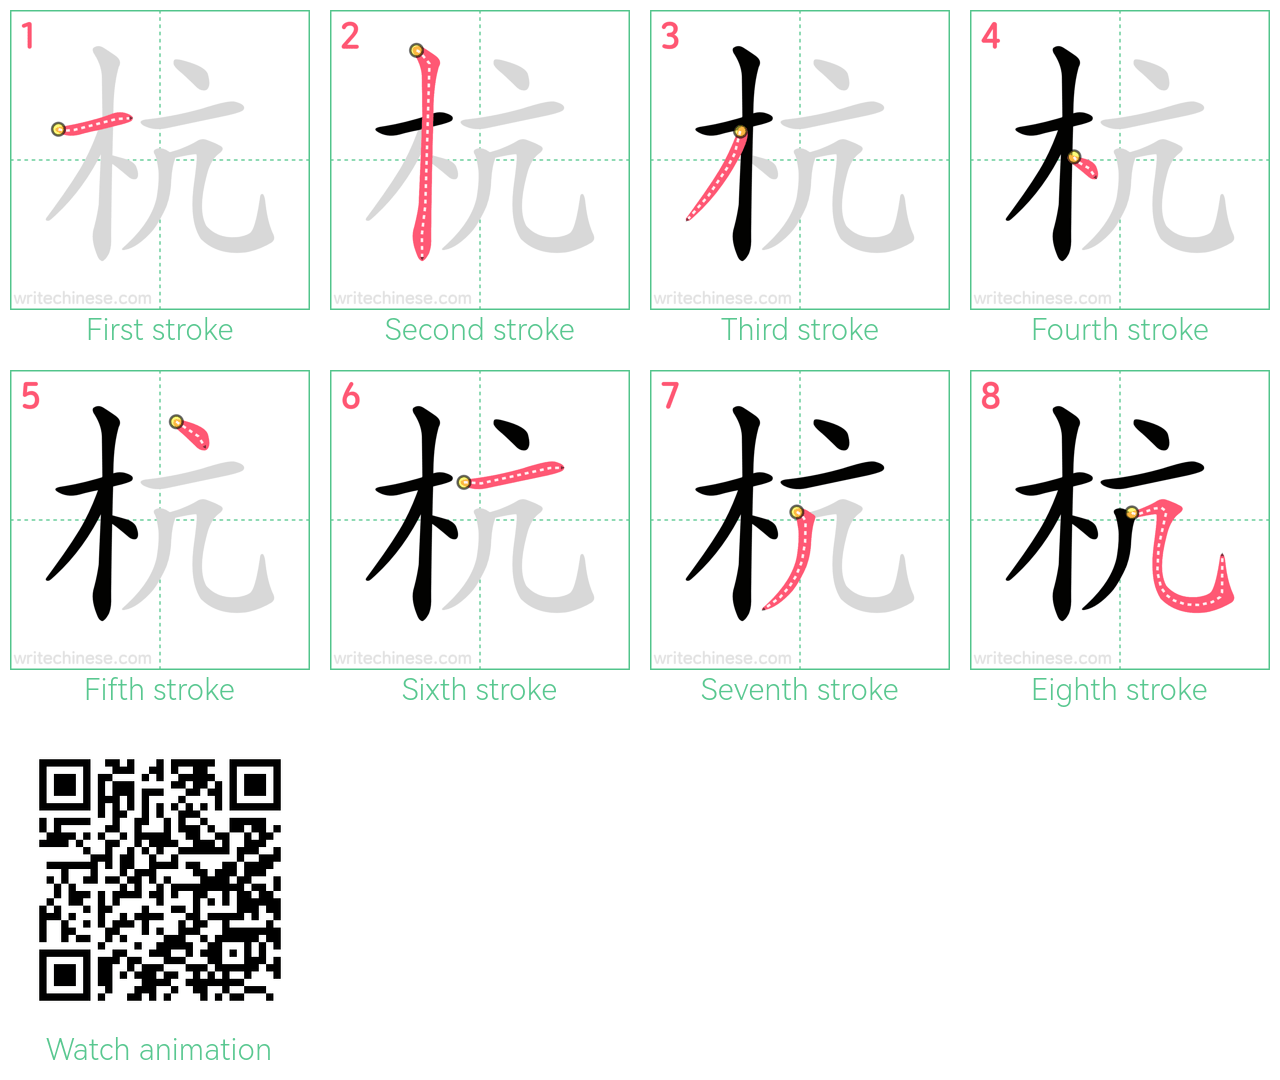 杭 step-by-step stroke order diagrams